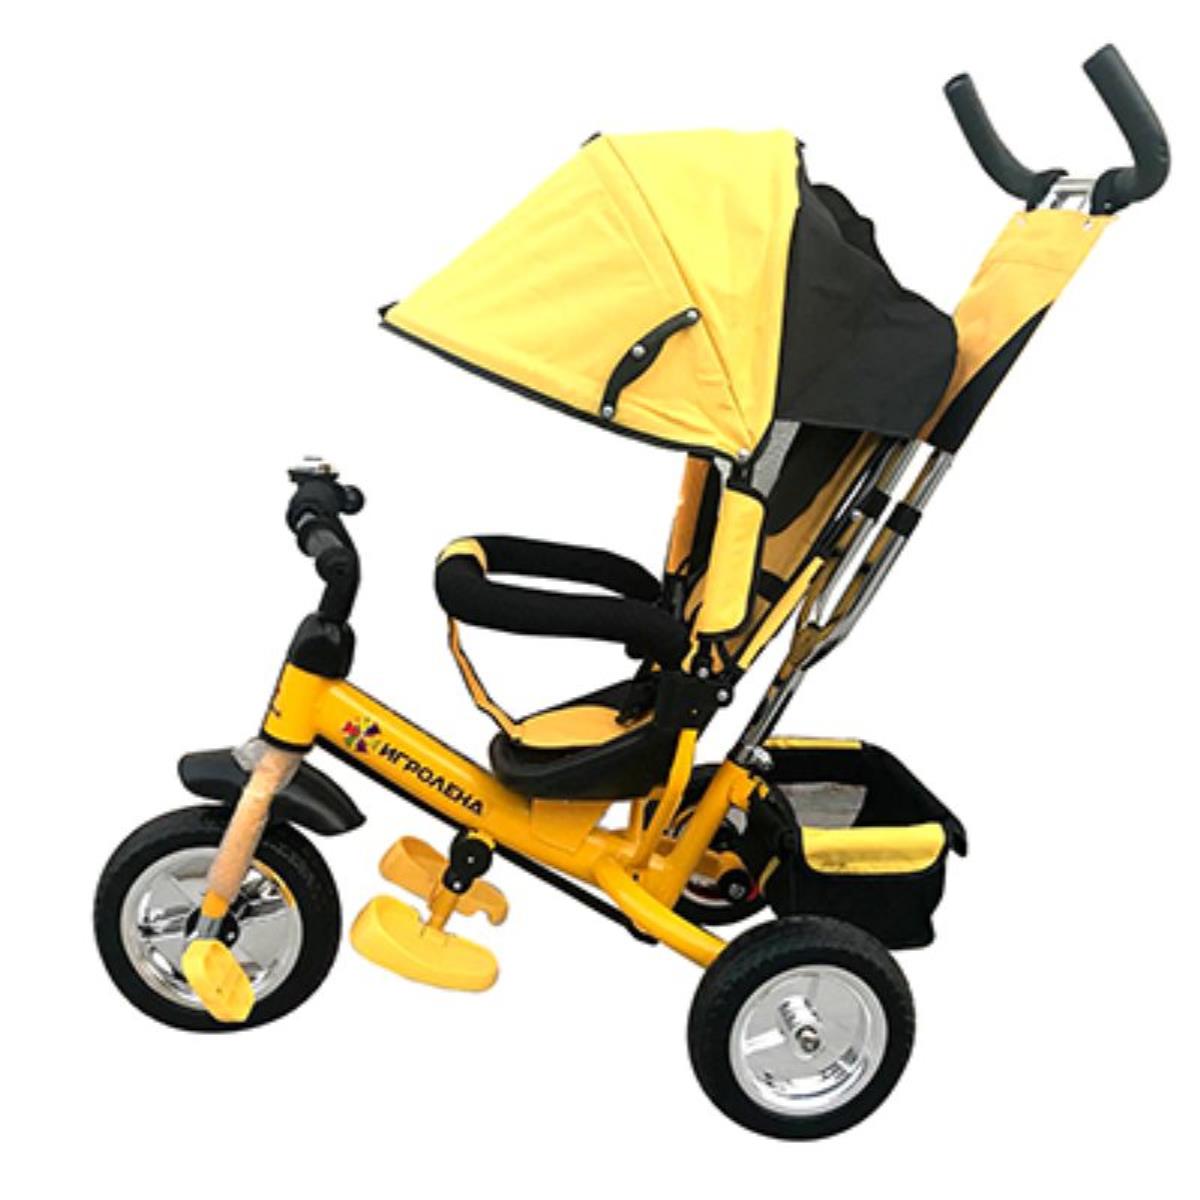 Купить велосипед коляска детский трехколесный с ручкой. Велосипед детский трехколесный Rapid t-315 (жёлтый). Велосипед трёхколёсный Мустанг жёлтый. Трехколесный велосипед RIVERTOYS tr606d-Eva. Детский велосипед с ручкой трёхколесный форвард желтый.